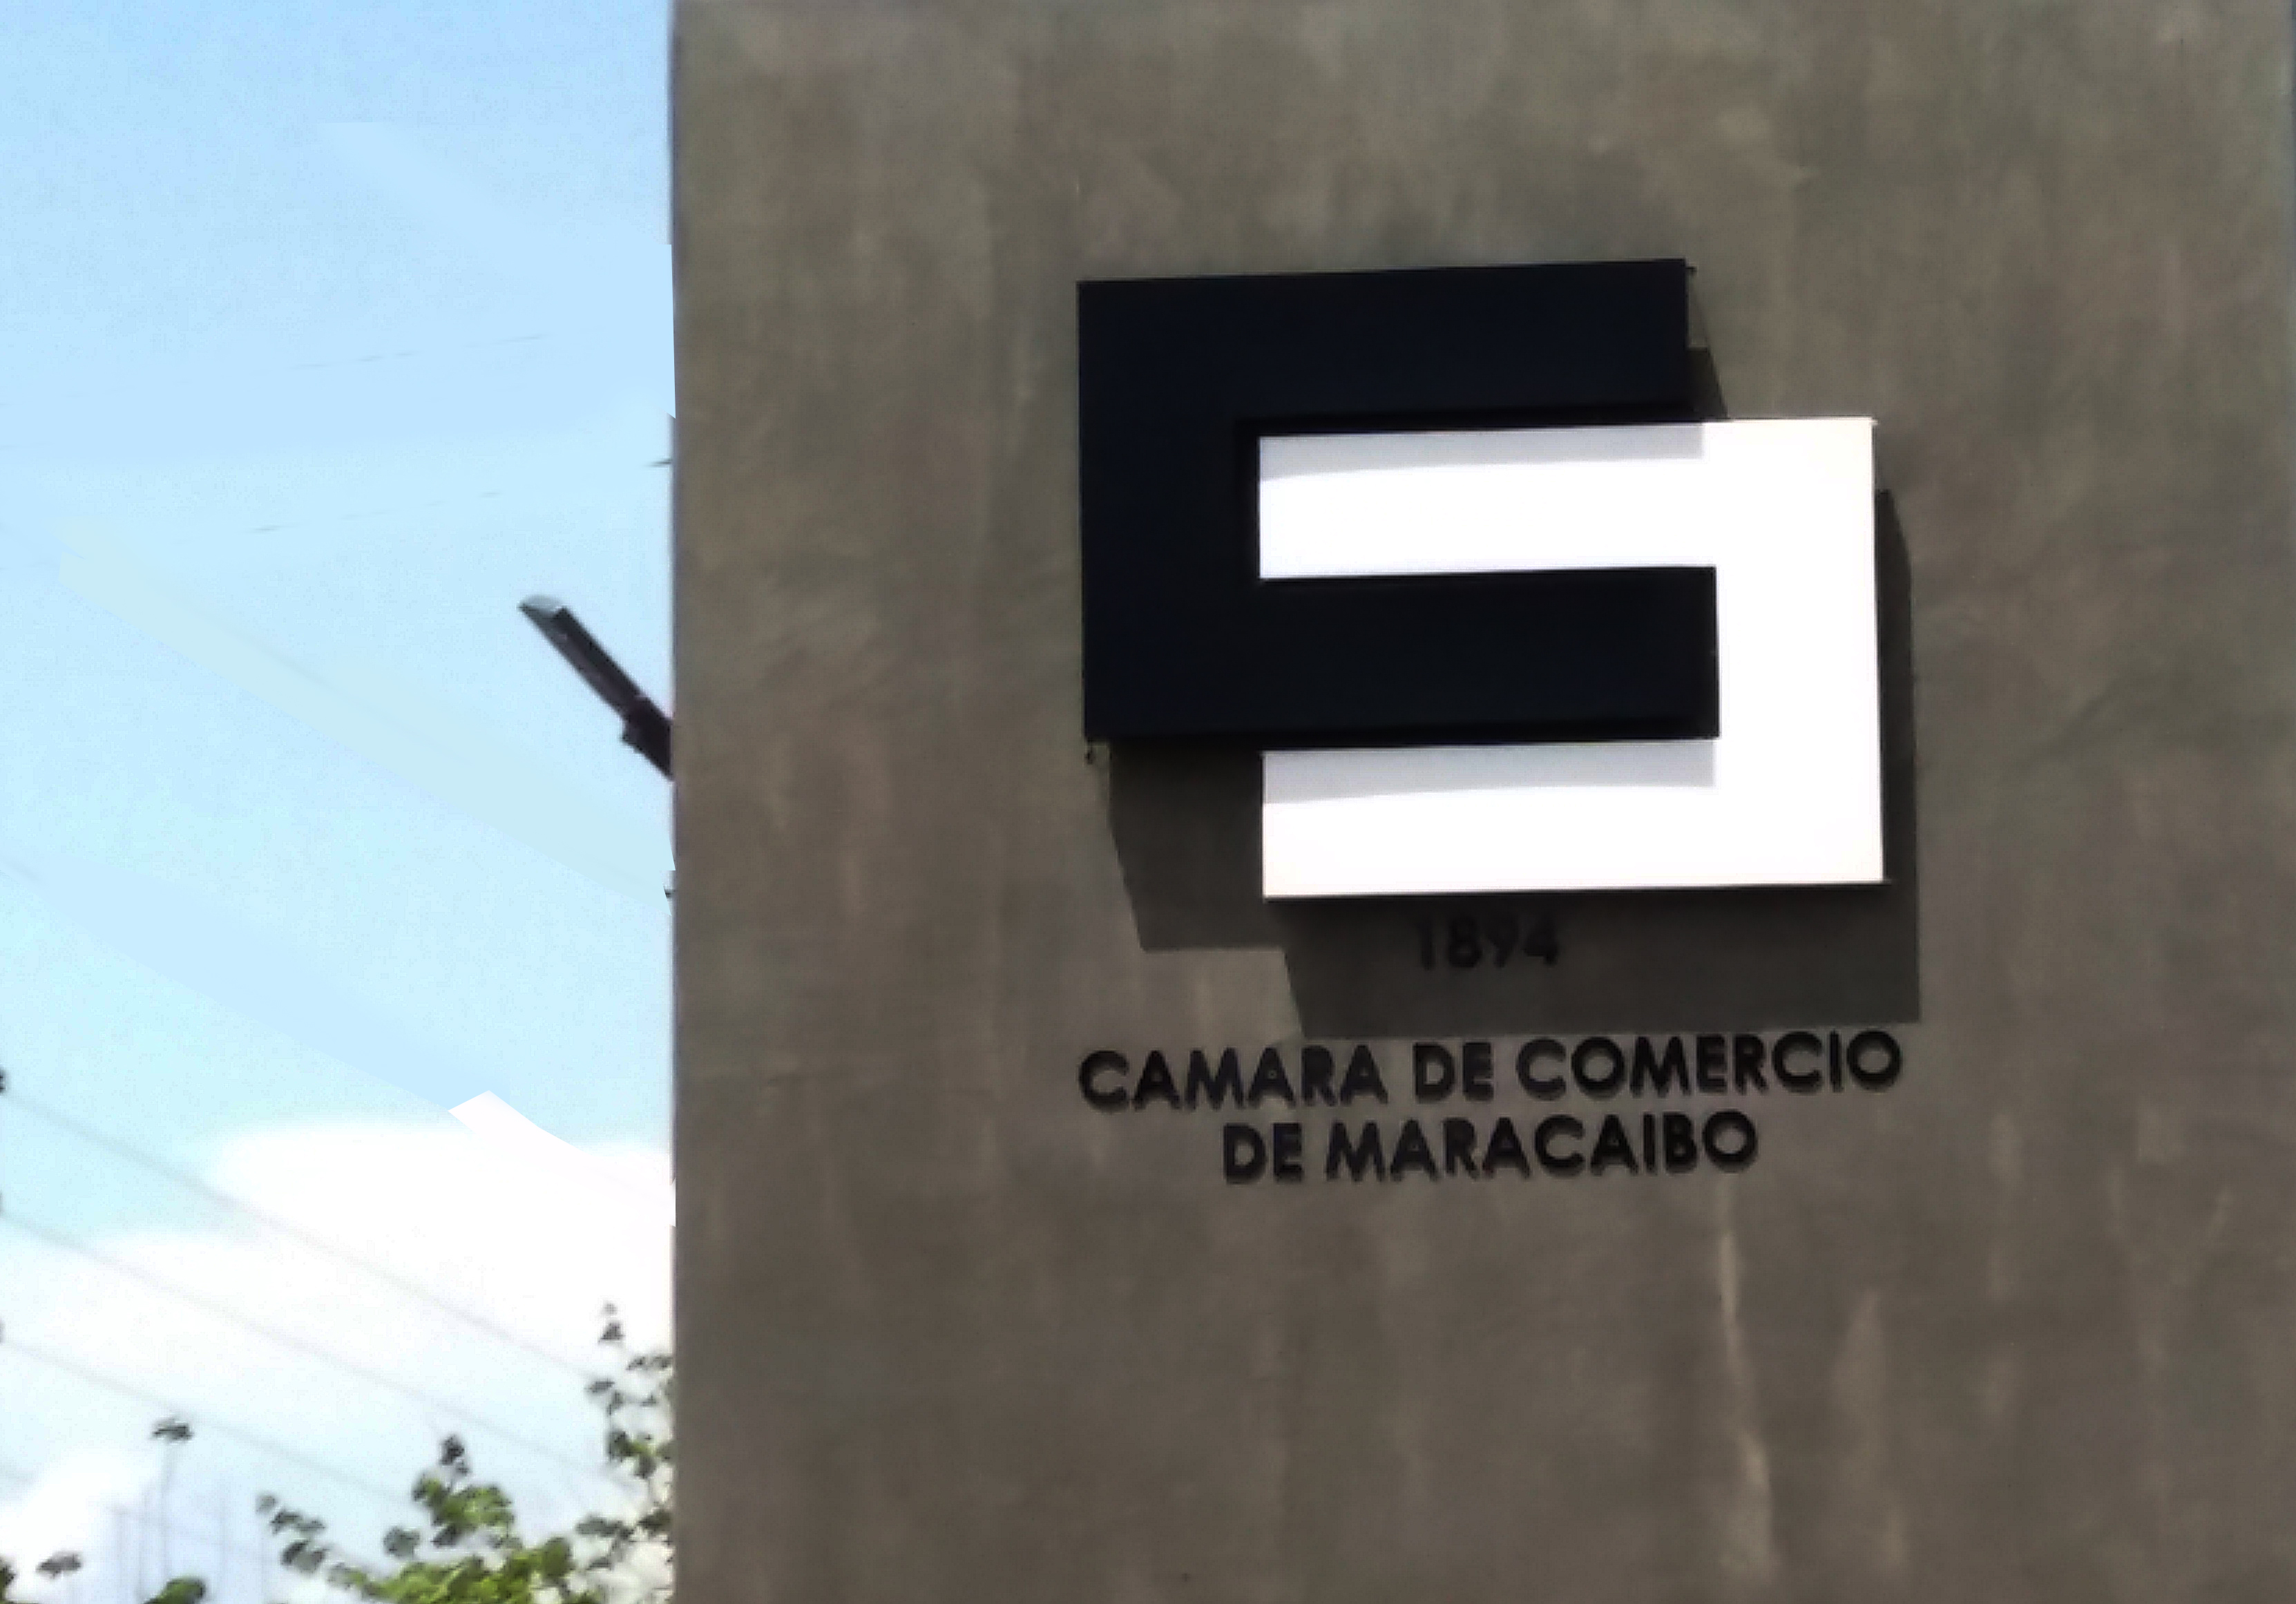 Empresas de Maracaibo mantienen su interés de retener y recompensar a sus trabajadores